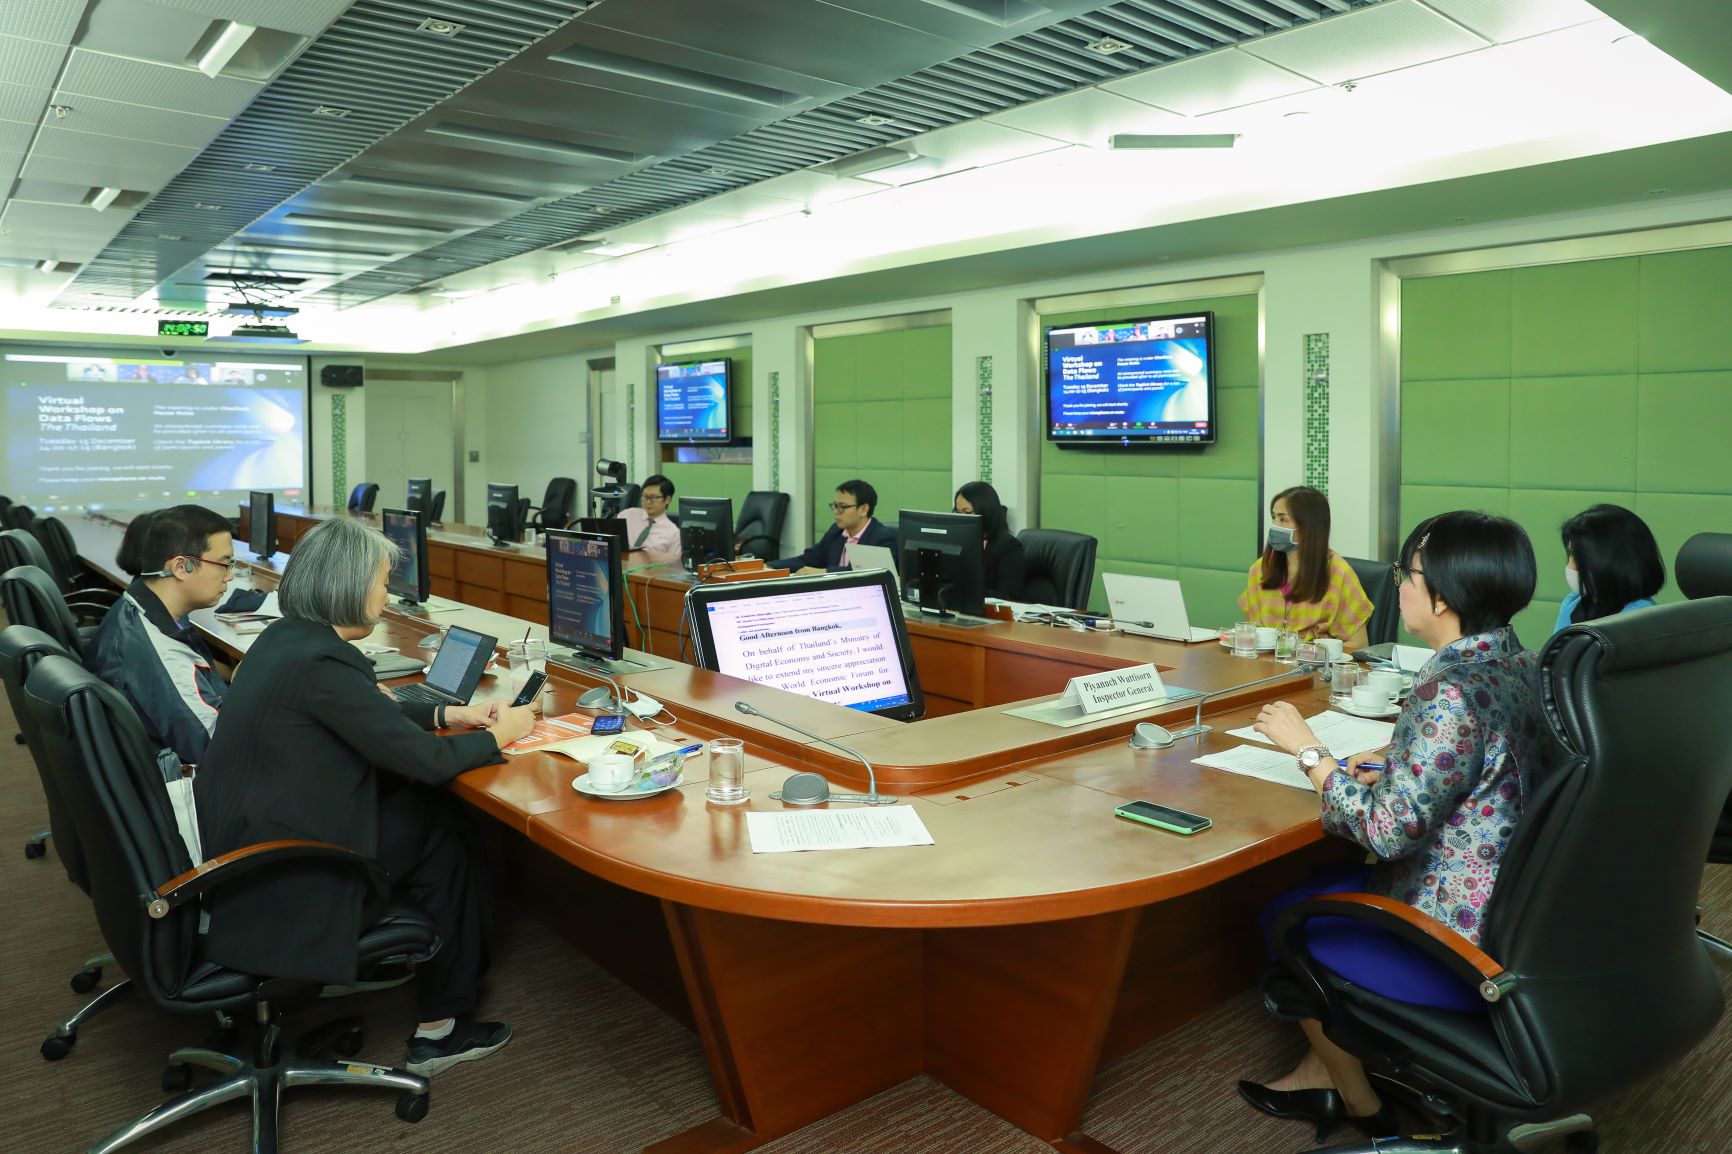 ดีอีเอส ร่วมประชุมเชิงปฏิบัติการของเวทีการประชุมเศรษฐกิจโลก (WEF)ภายใต้หัวข้อ Cross - border data flows in Thailand